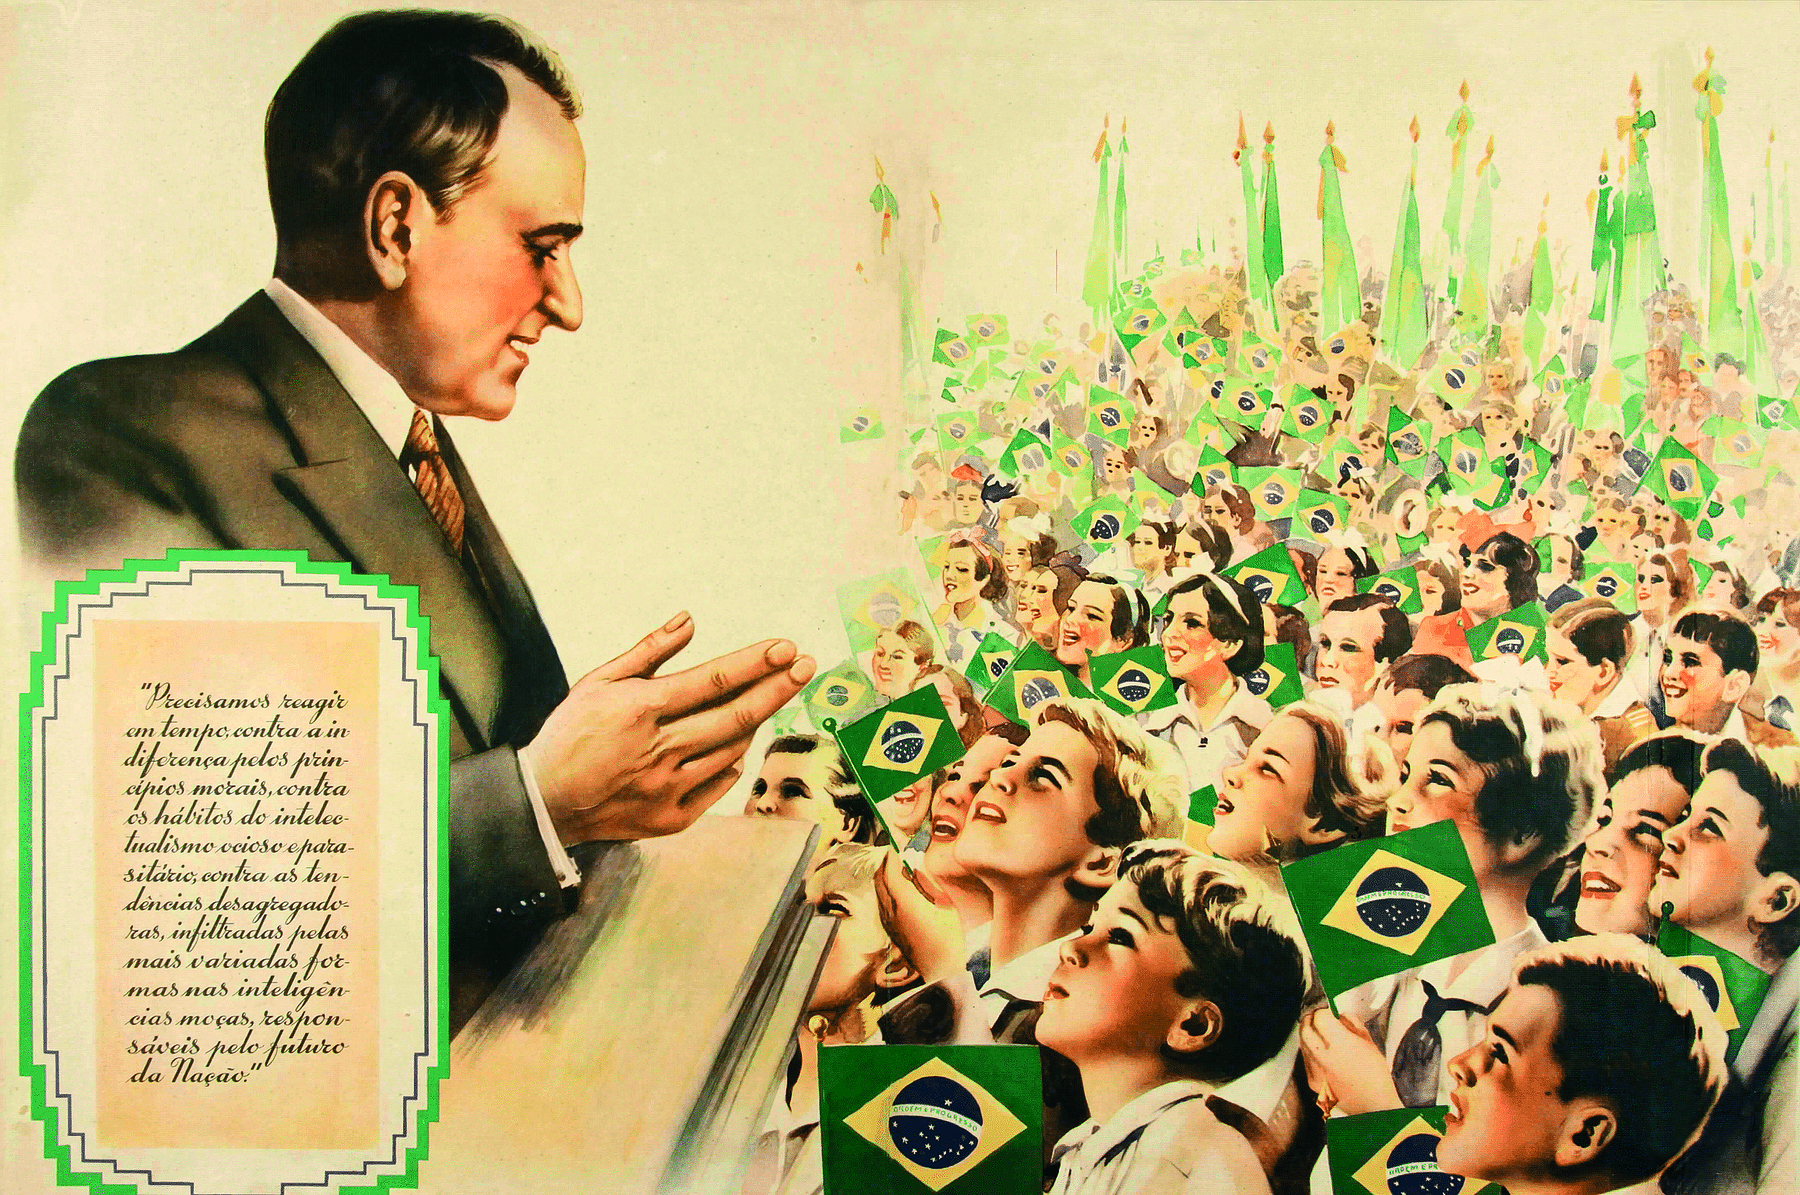 Ilustração. À esquerda, imagem de um homem visto de lado, com cabelos castanhos, curtos e lisos, vestindo um paletó marrom, com a mão direita em evidência. À sua frente e olhando para ele, uma multidão de pessoas, majoritariamente crianças, portando bandeirinhas do Brasil em suas mãos.